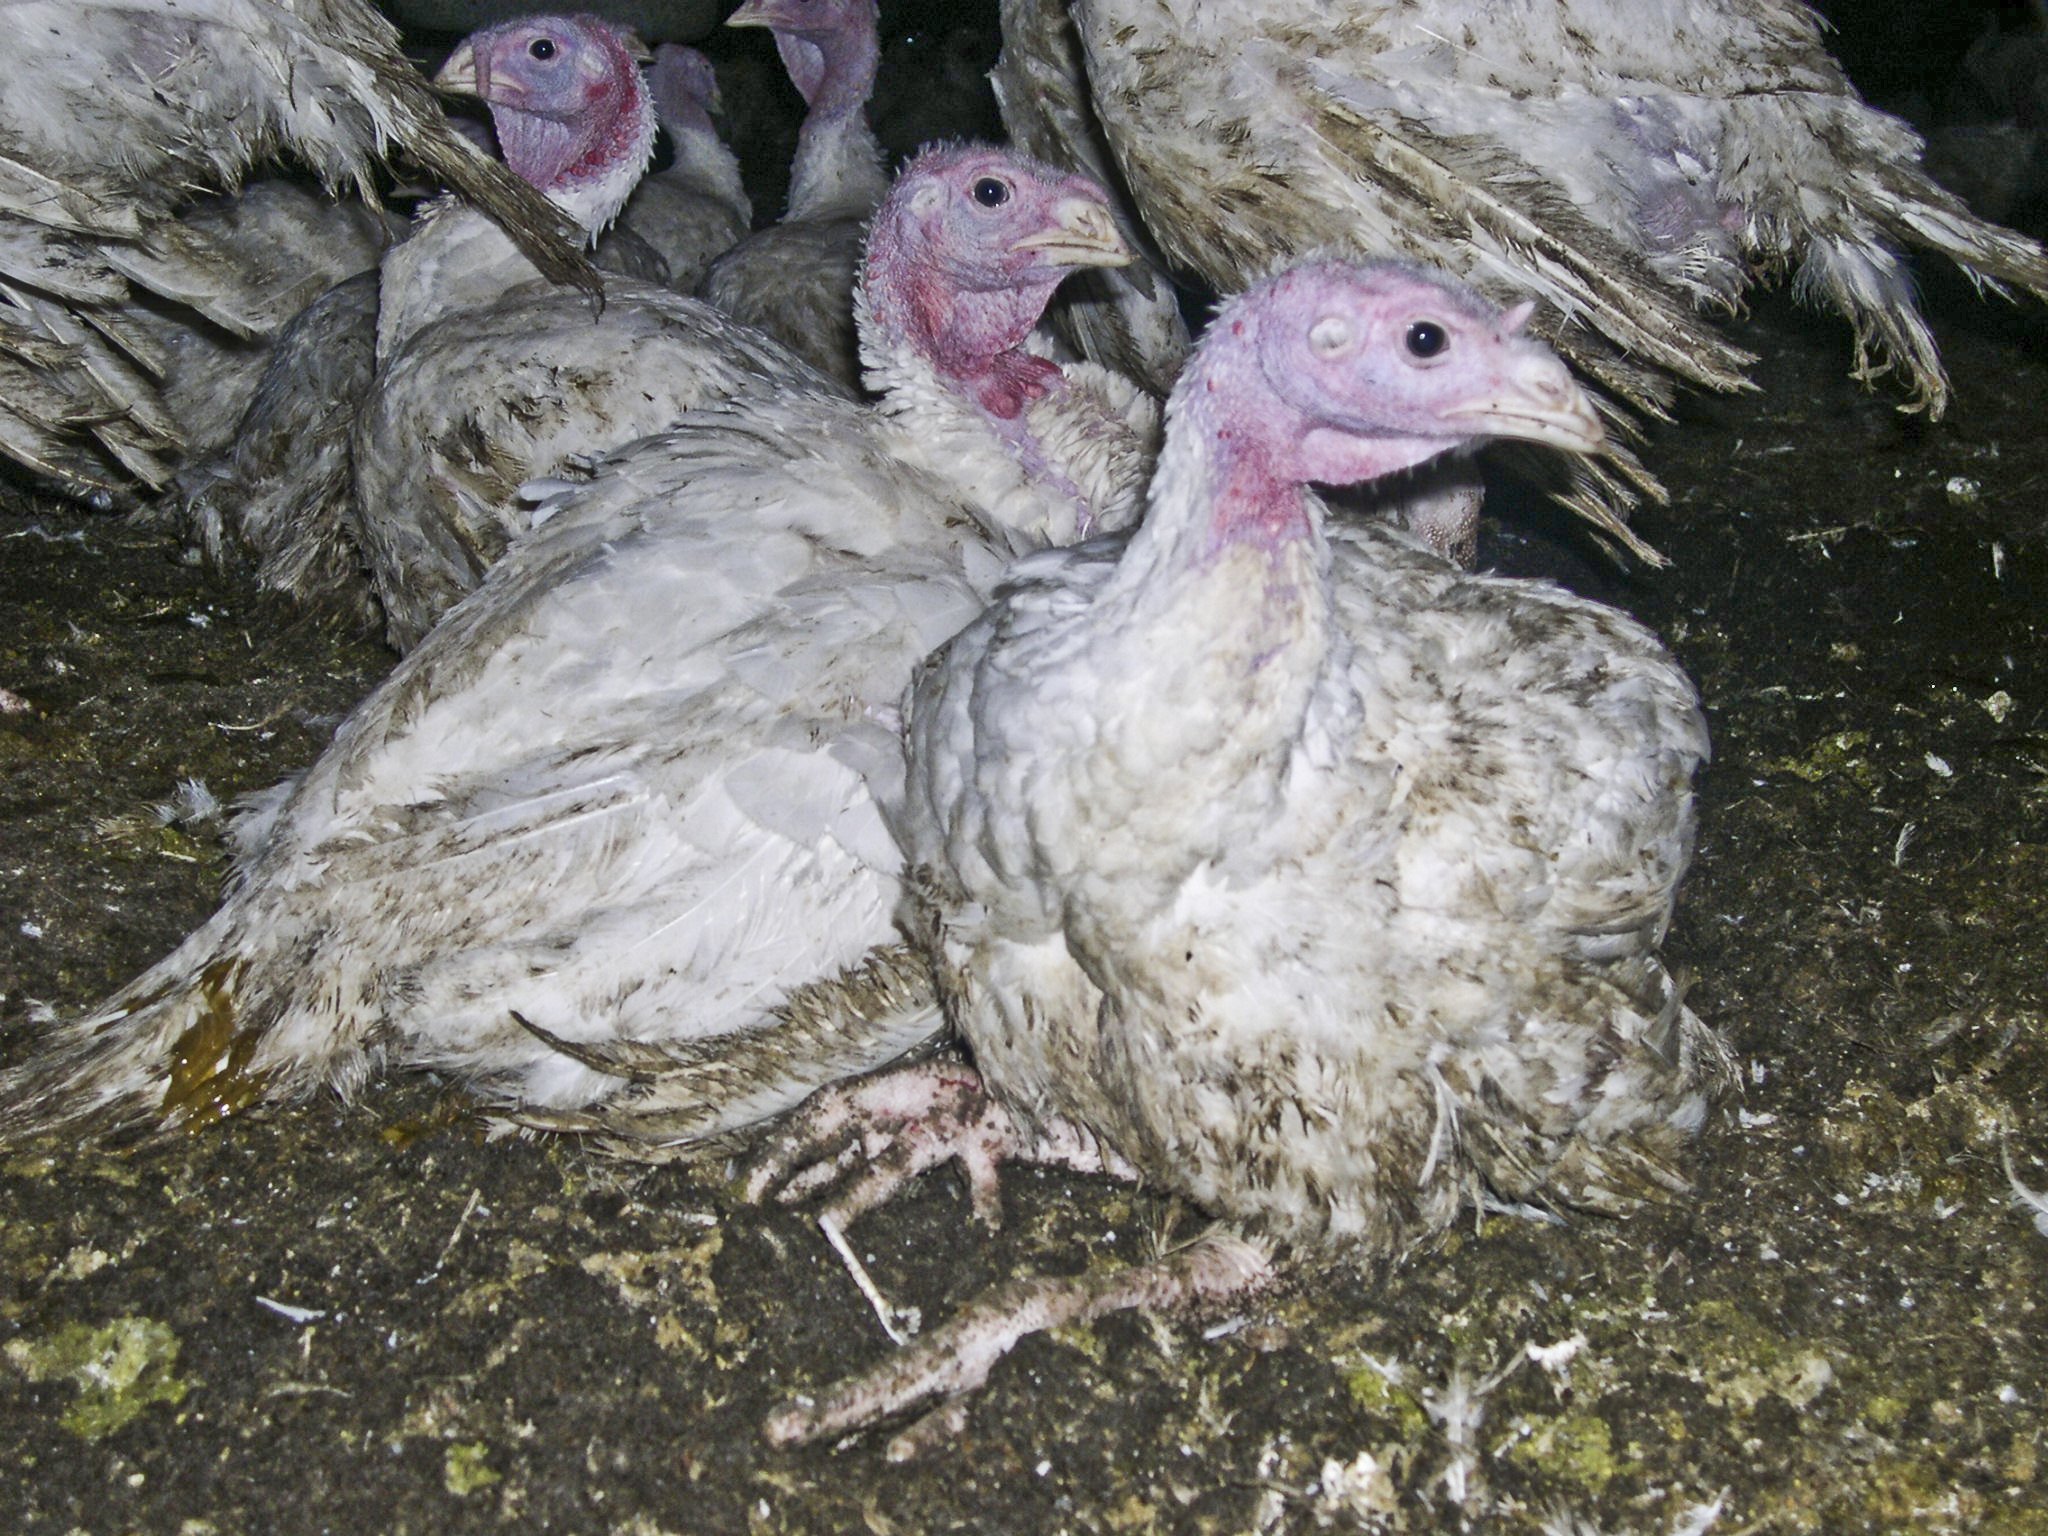 Factory Farmed Turkeys